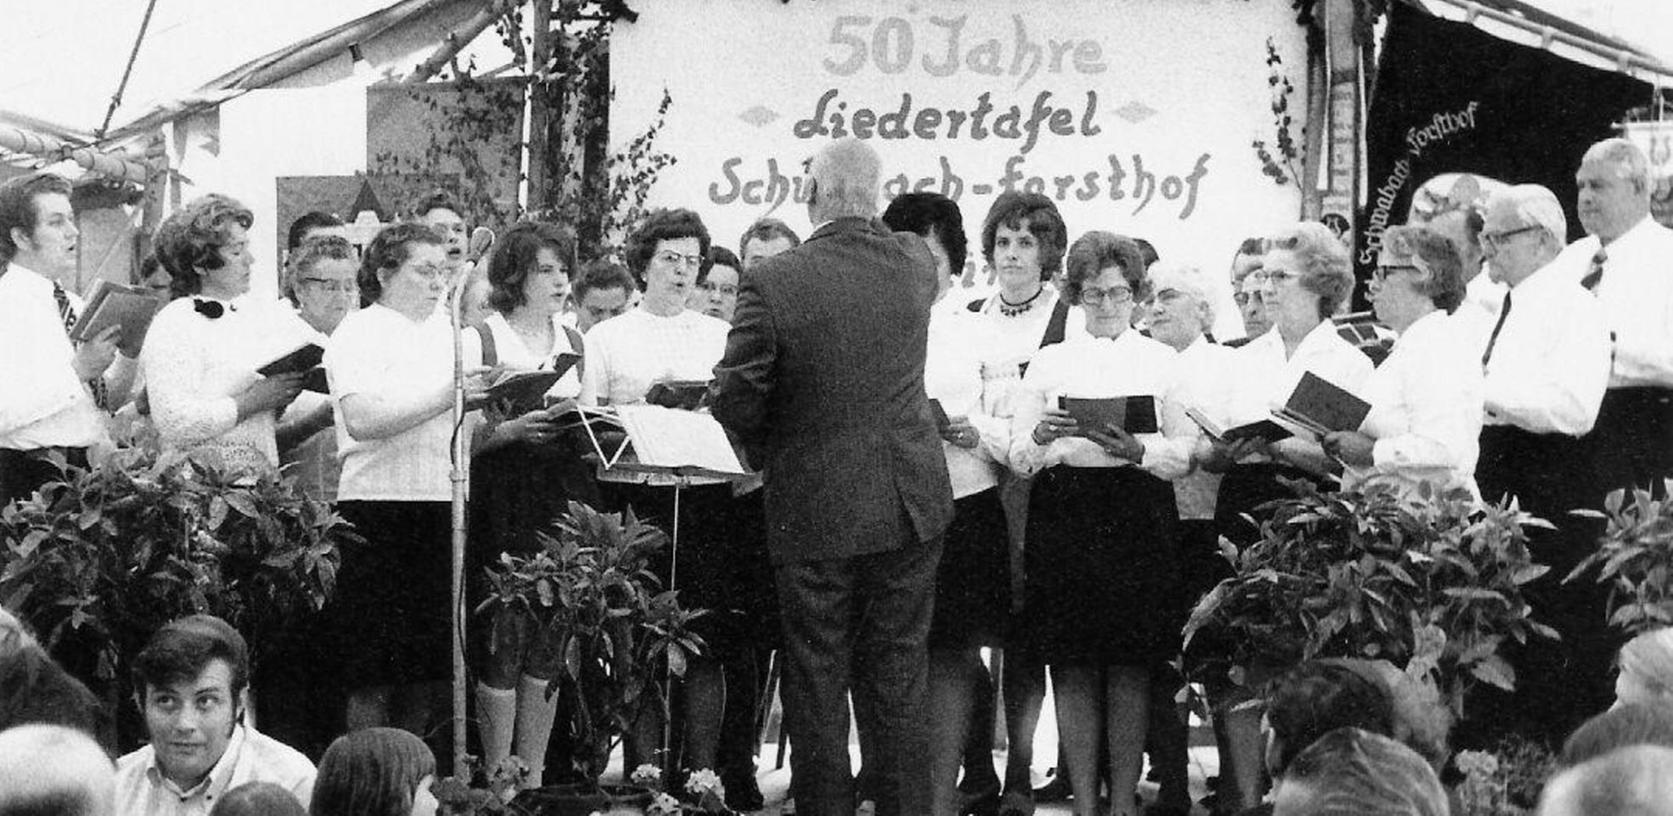 Die Liedertafel Schwabach-Forsthof feiert ihren 185. Geburtstag